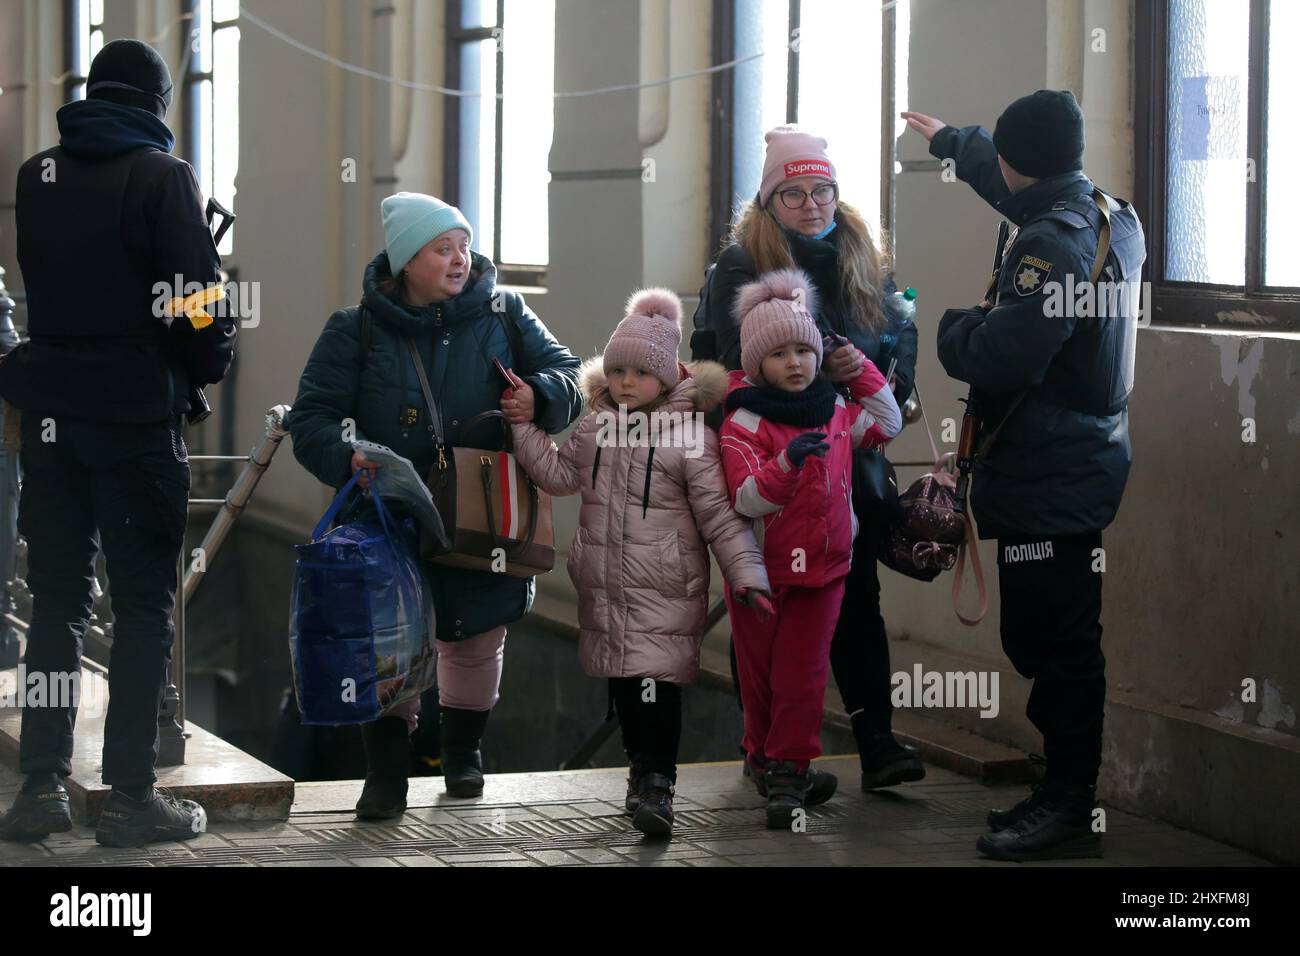 LVIV, UKRAINE - 11. MÄRZ 2022 - Ein Polizeibeamter spricht mit Frauen, die mit Mädchen gehen, während Menschen, die vor der russischen Invasion fliehen, auf einen Evakuierungszug warten Stockfoto